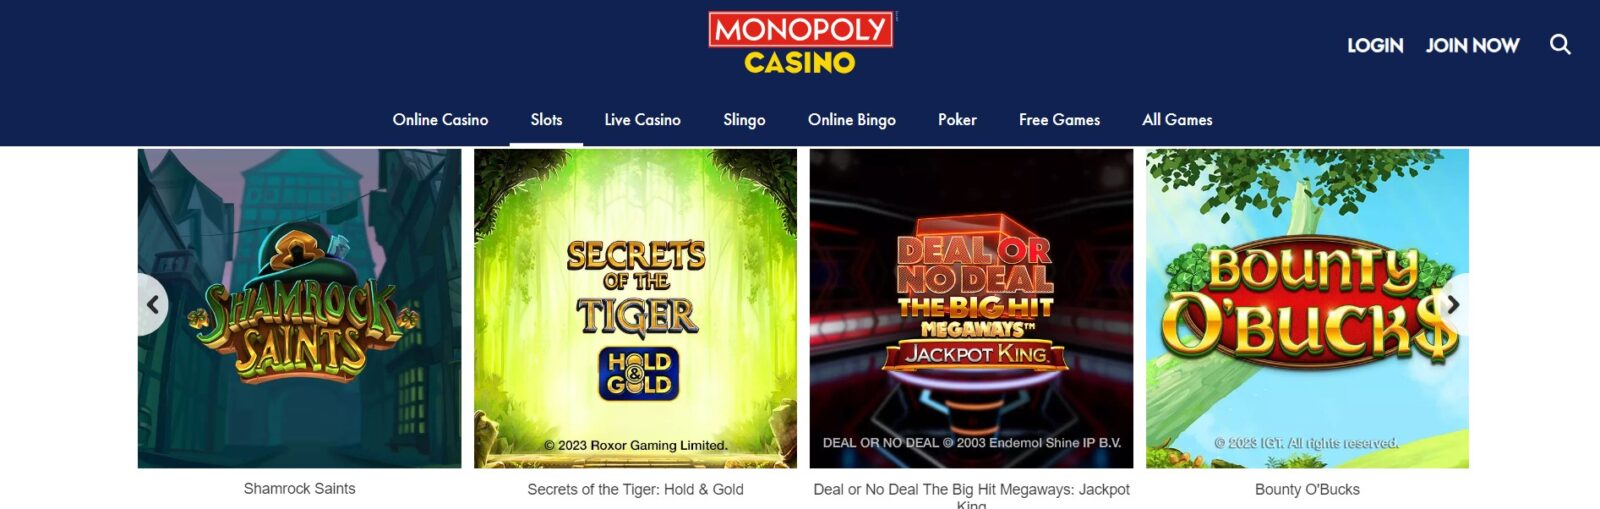 Juegos y Apuestas Disponibles en Monopoly Casino